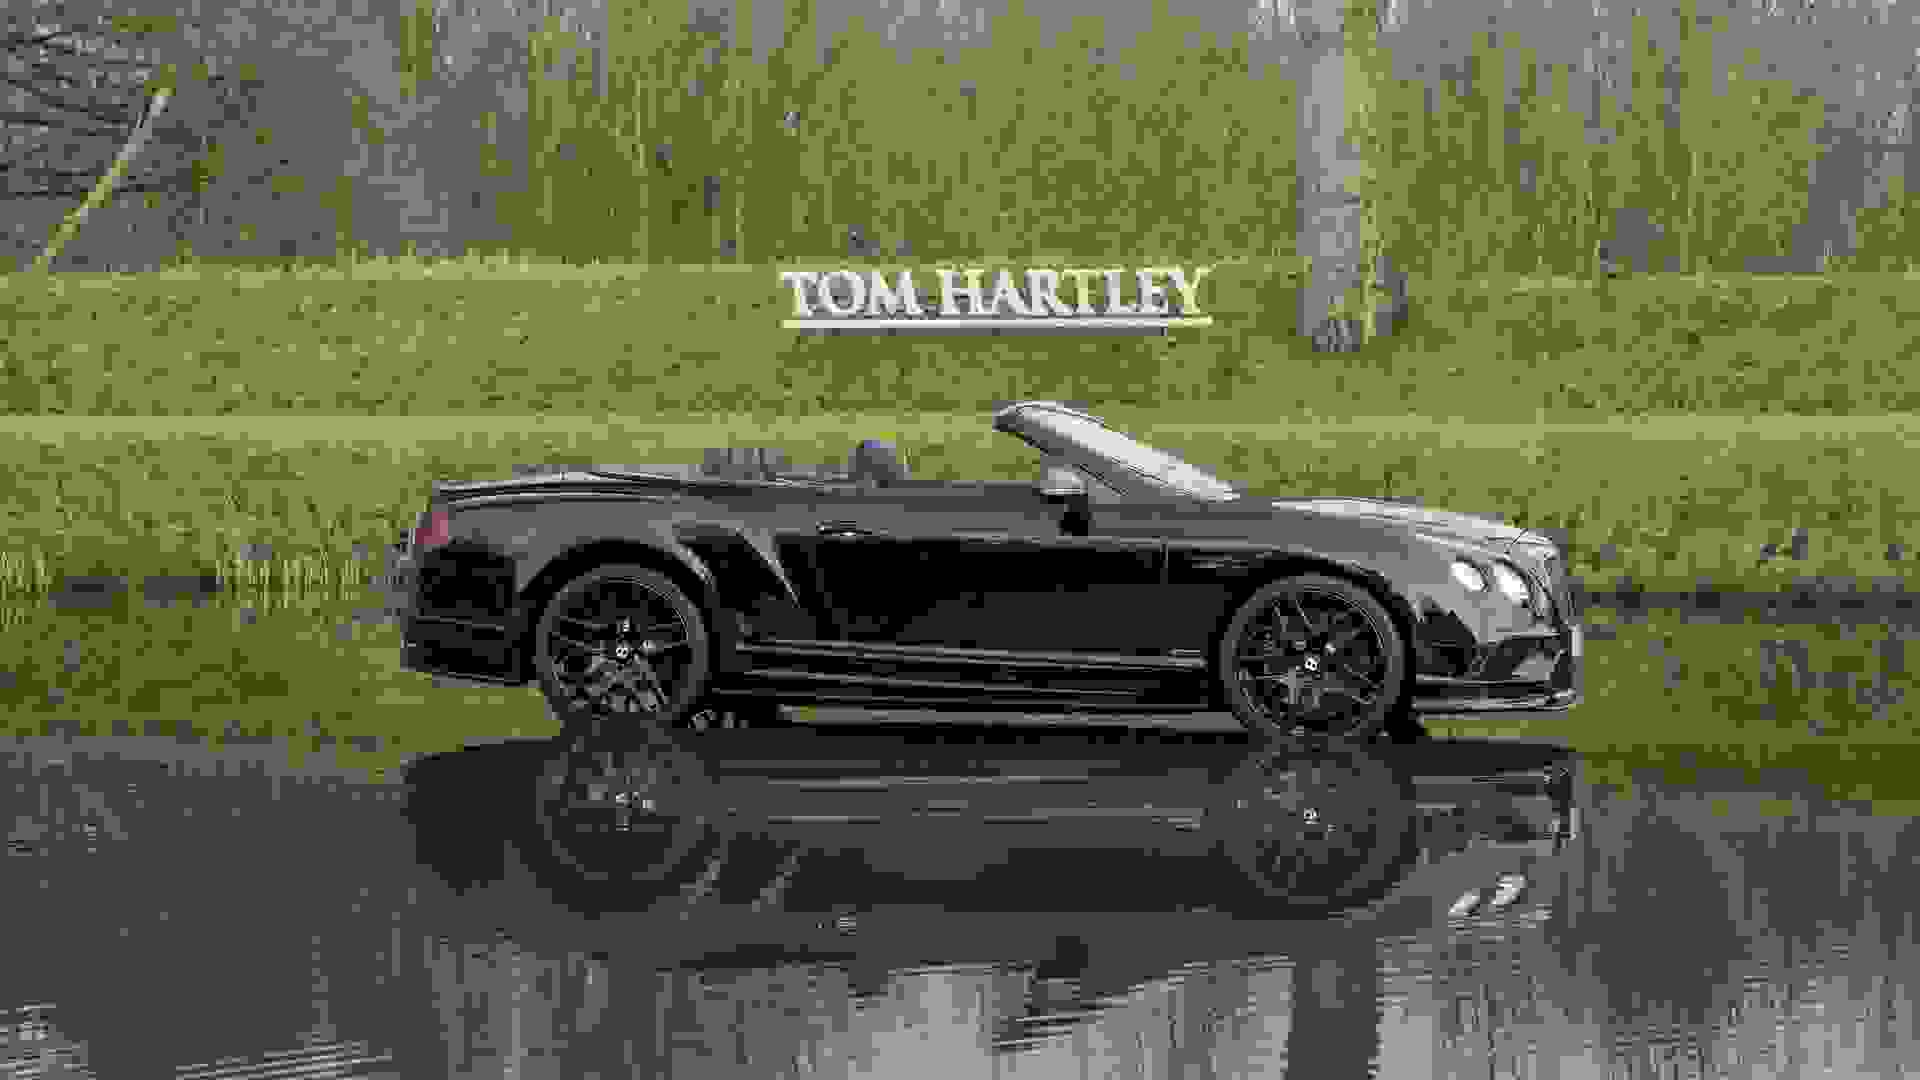 Bentley Continental GTC Photo ad1dccf6-f65a-48db-80e4-d72f8905a8fa.jpg